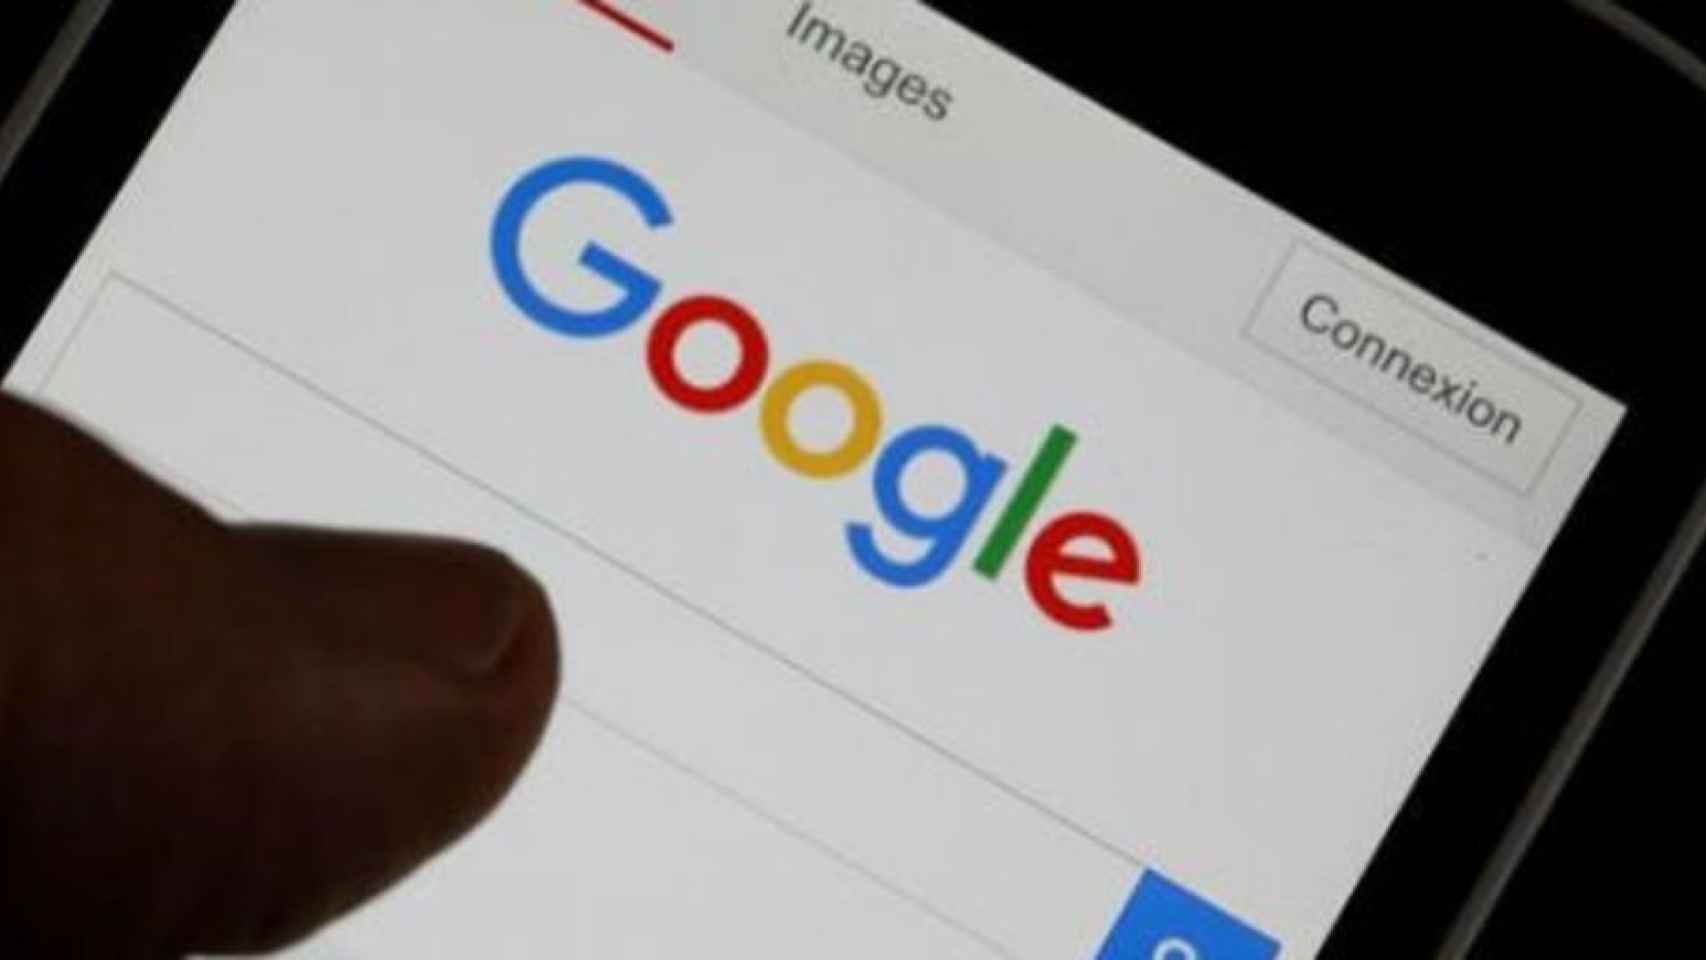 En Google los salarios los propone un algoritmo para evitar brecha salarial